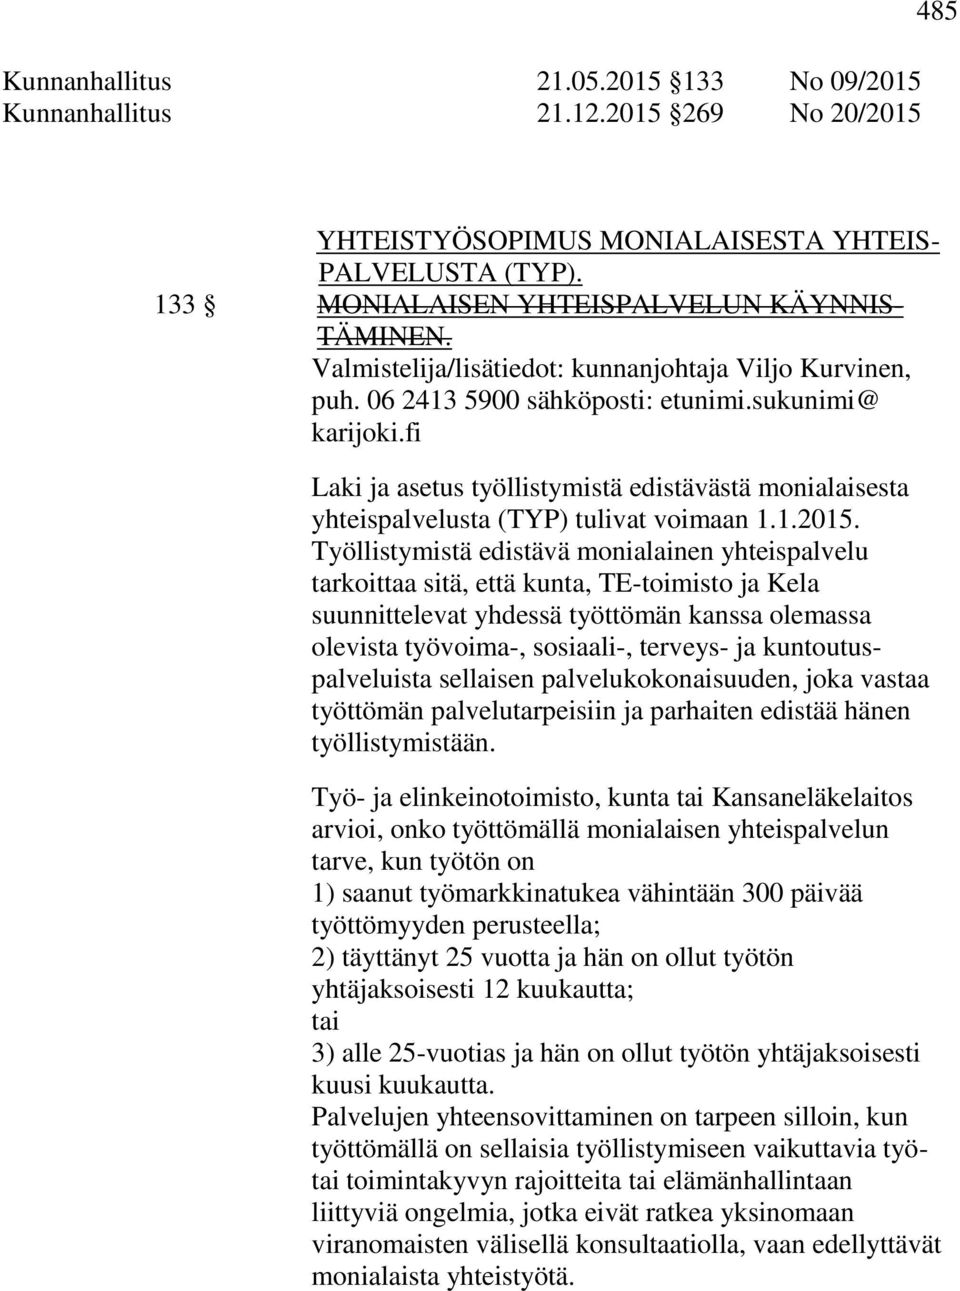 fi Laki ja asetus työllistymistä edistävästä monialaisesta yhteispalvelusta (TYP) tulivat voimaan 1.1.2015.